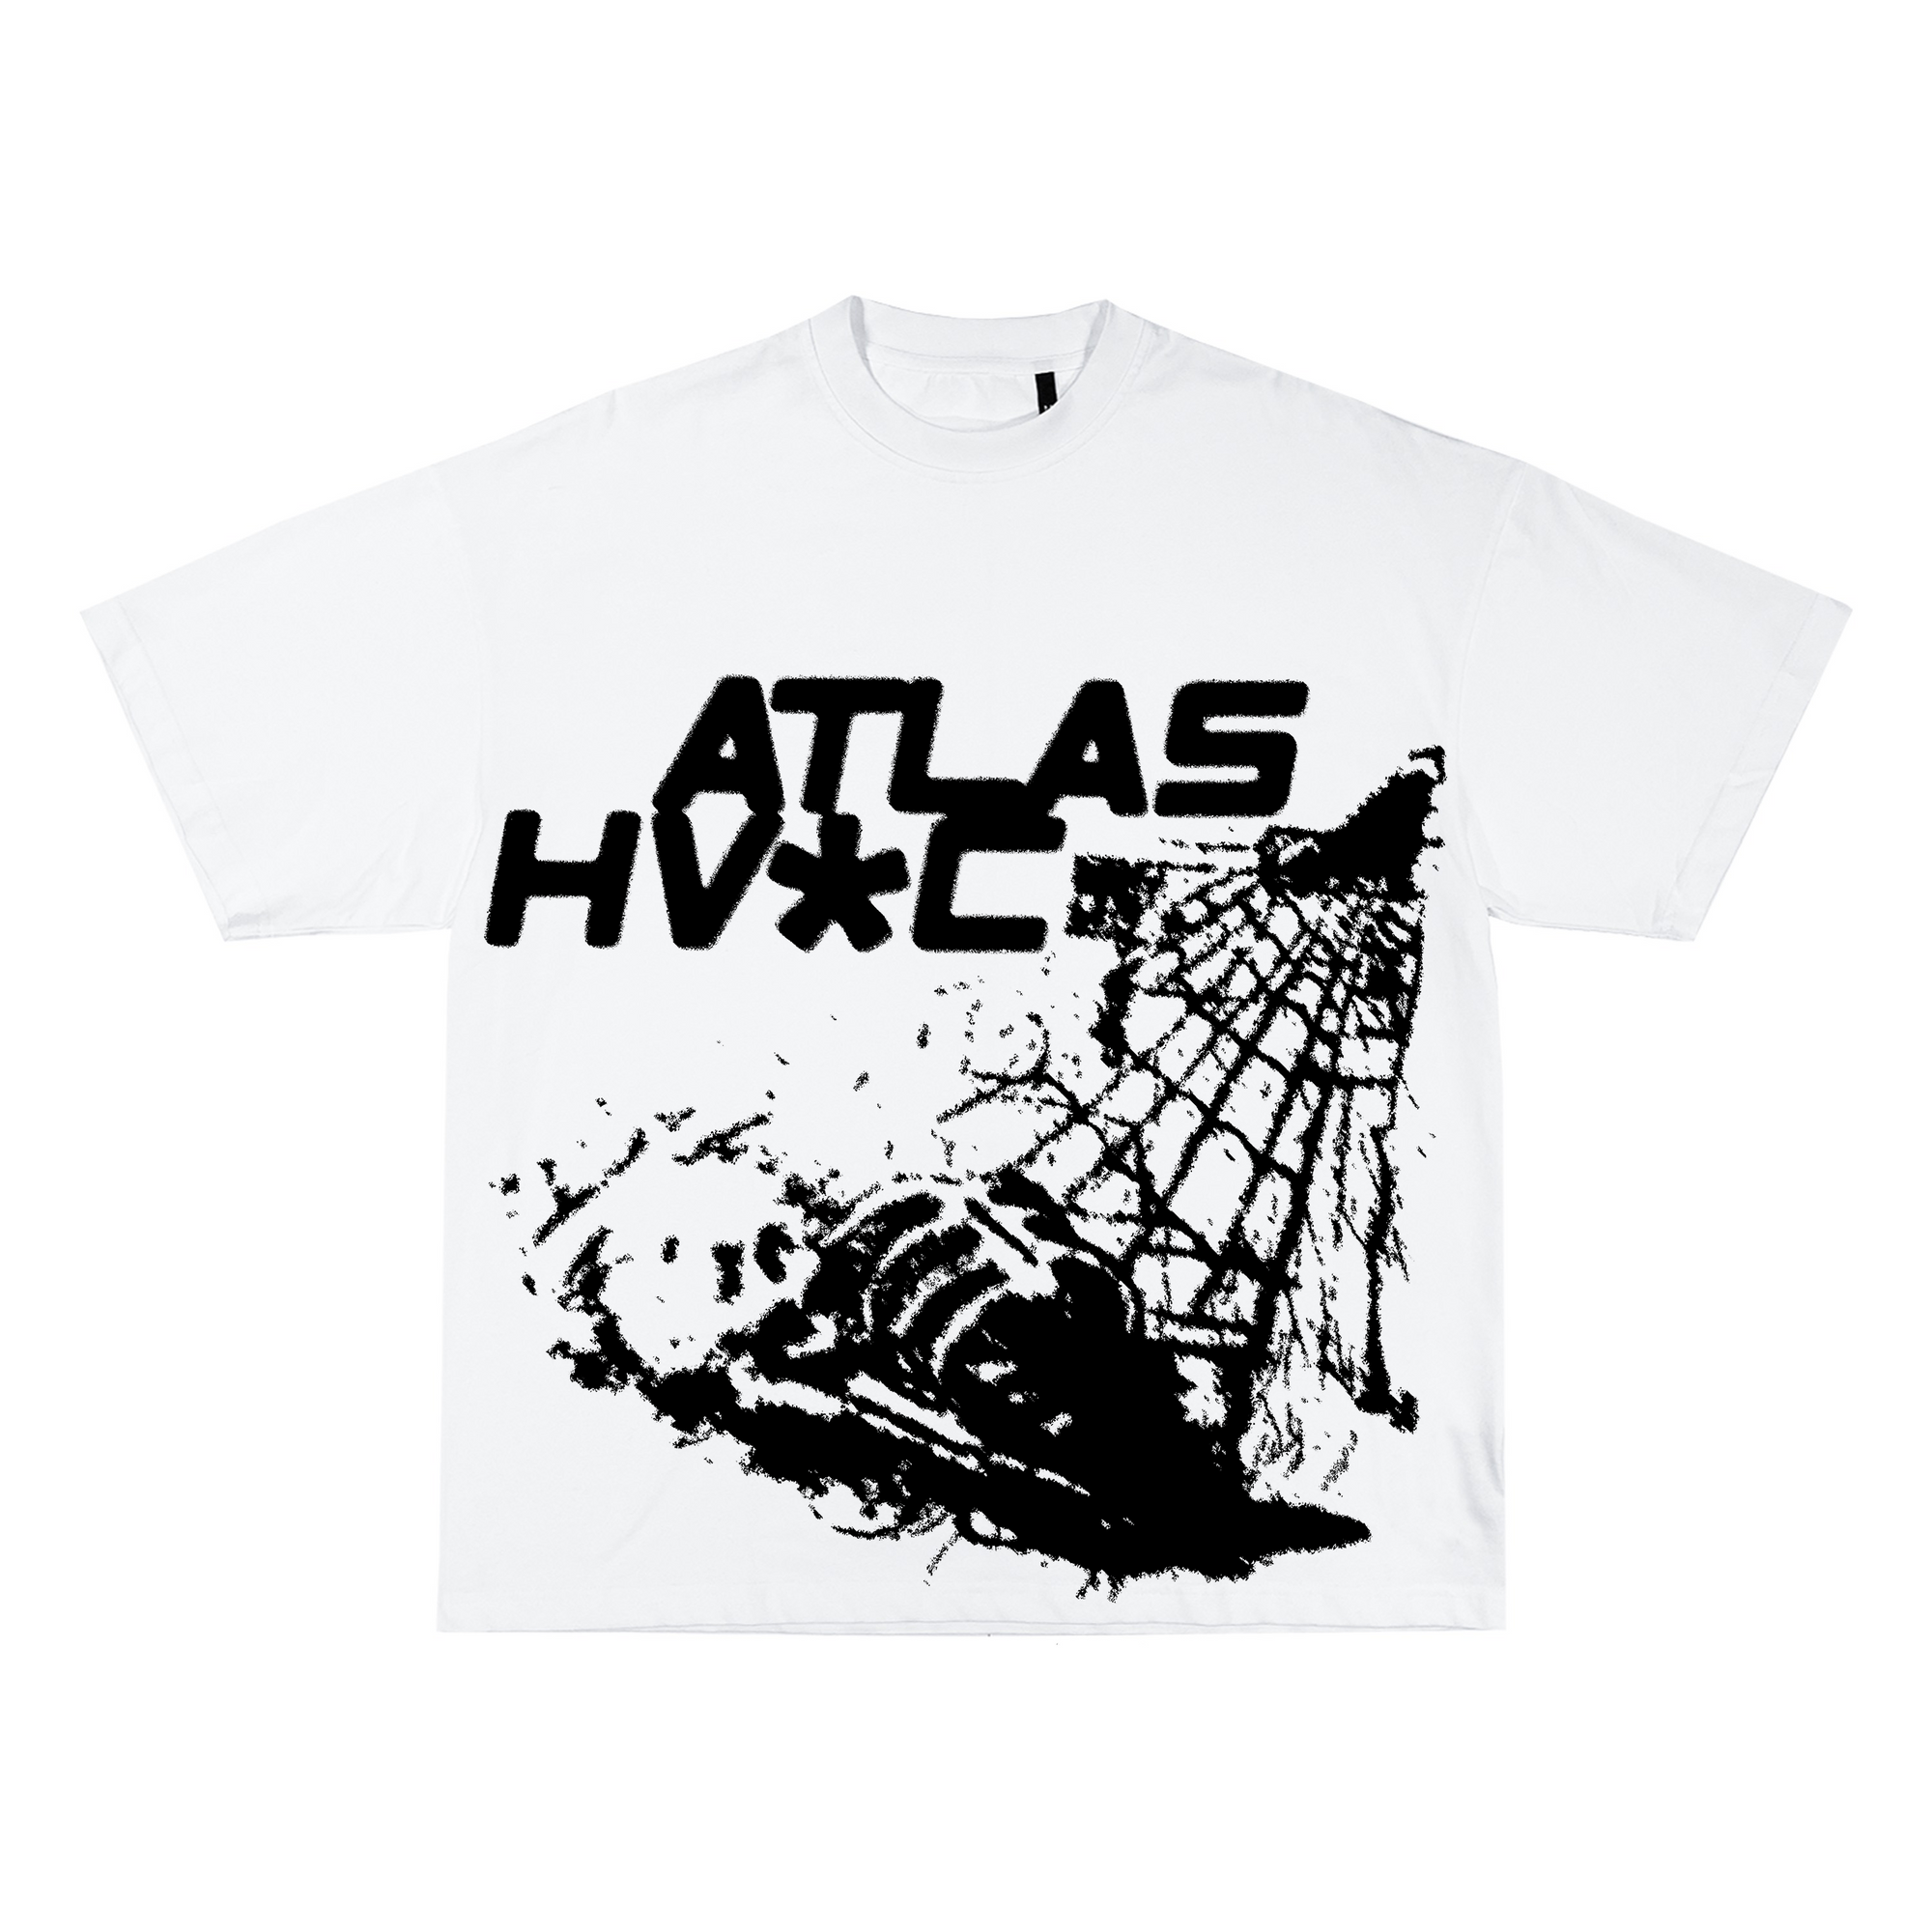 ‘Atlas Hav*c’ Tee